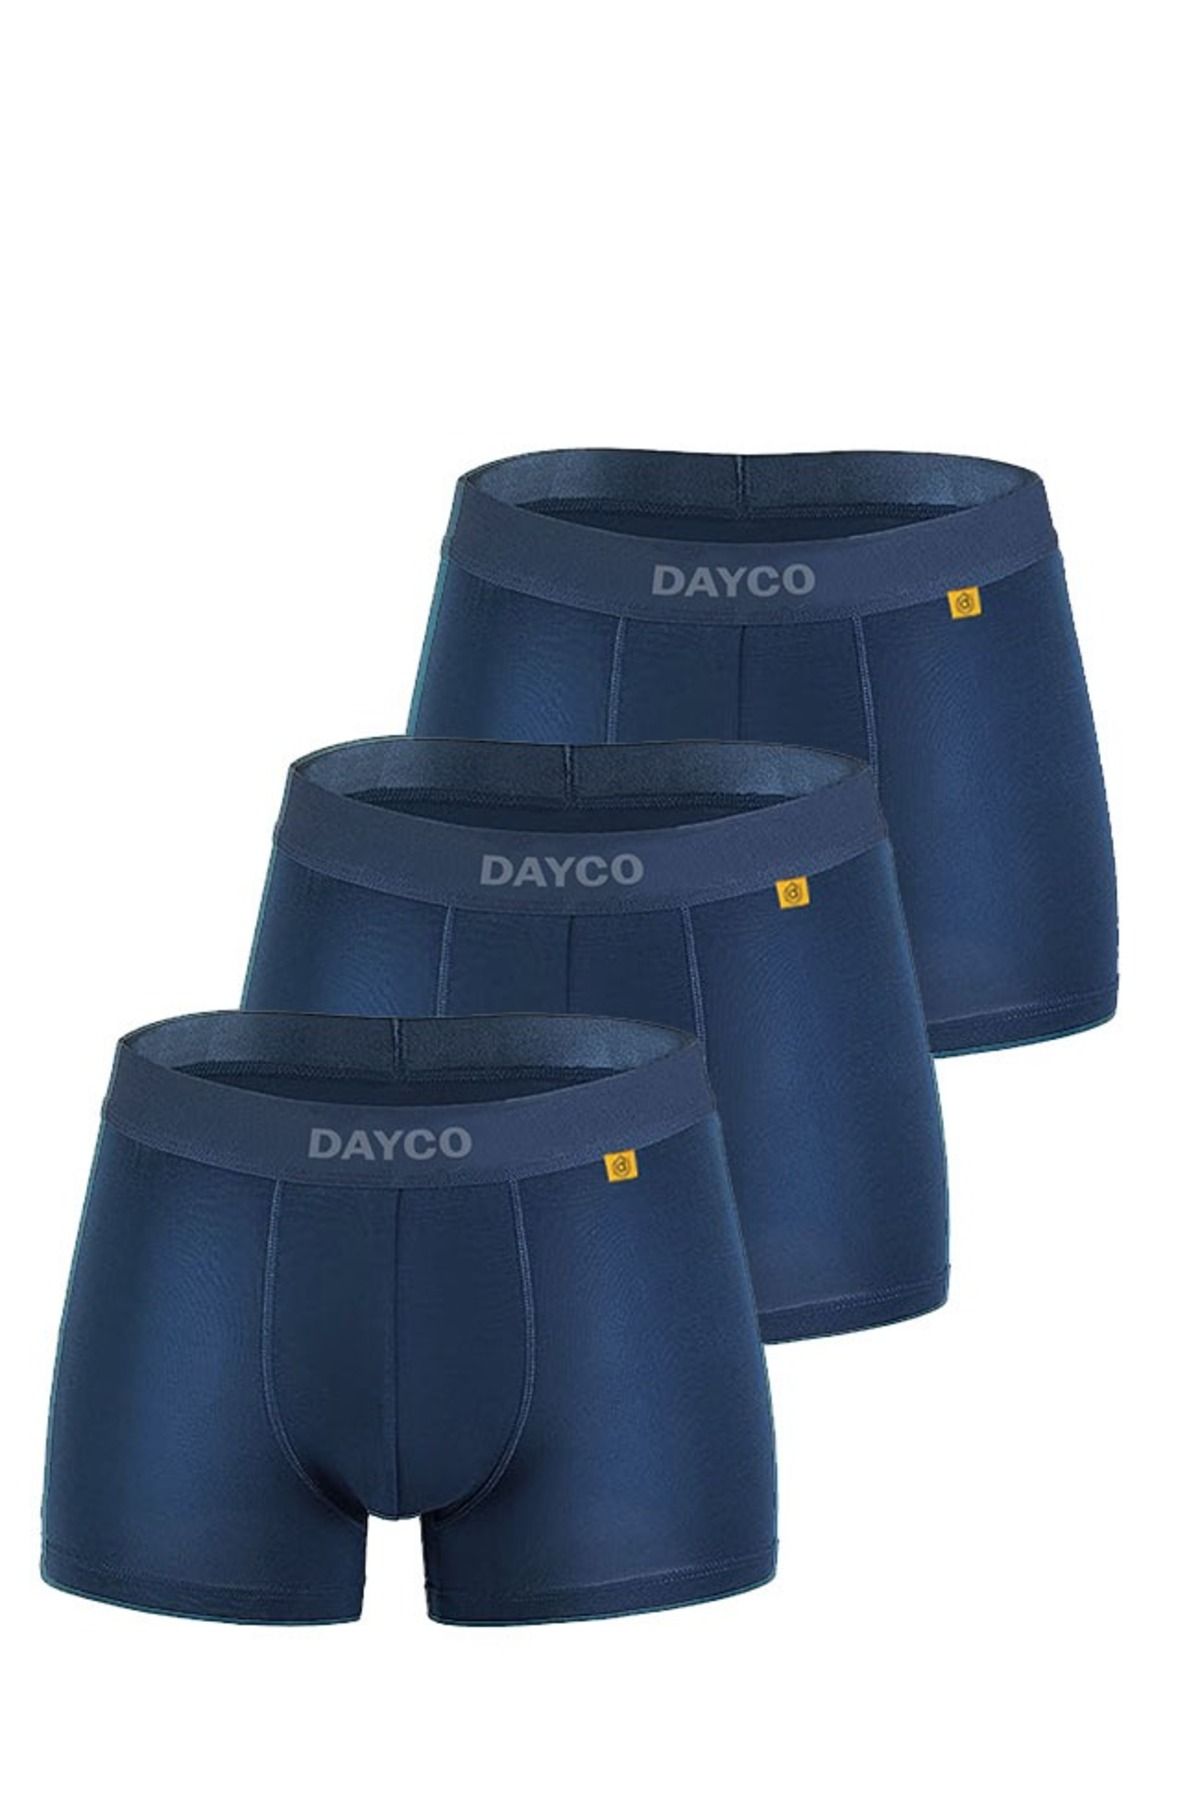 DAYCO Premium Lacivert Renk Bambu Boxer 3'lü Avantaj Paketi -ICB102-XL-LACI